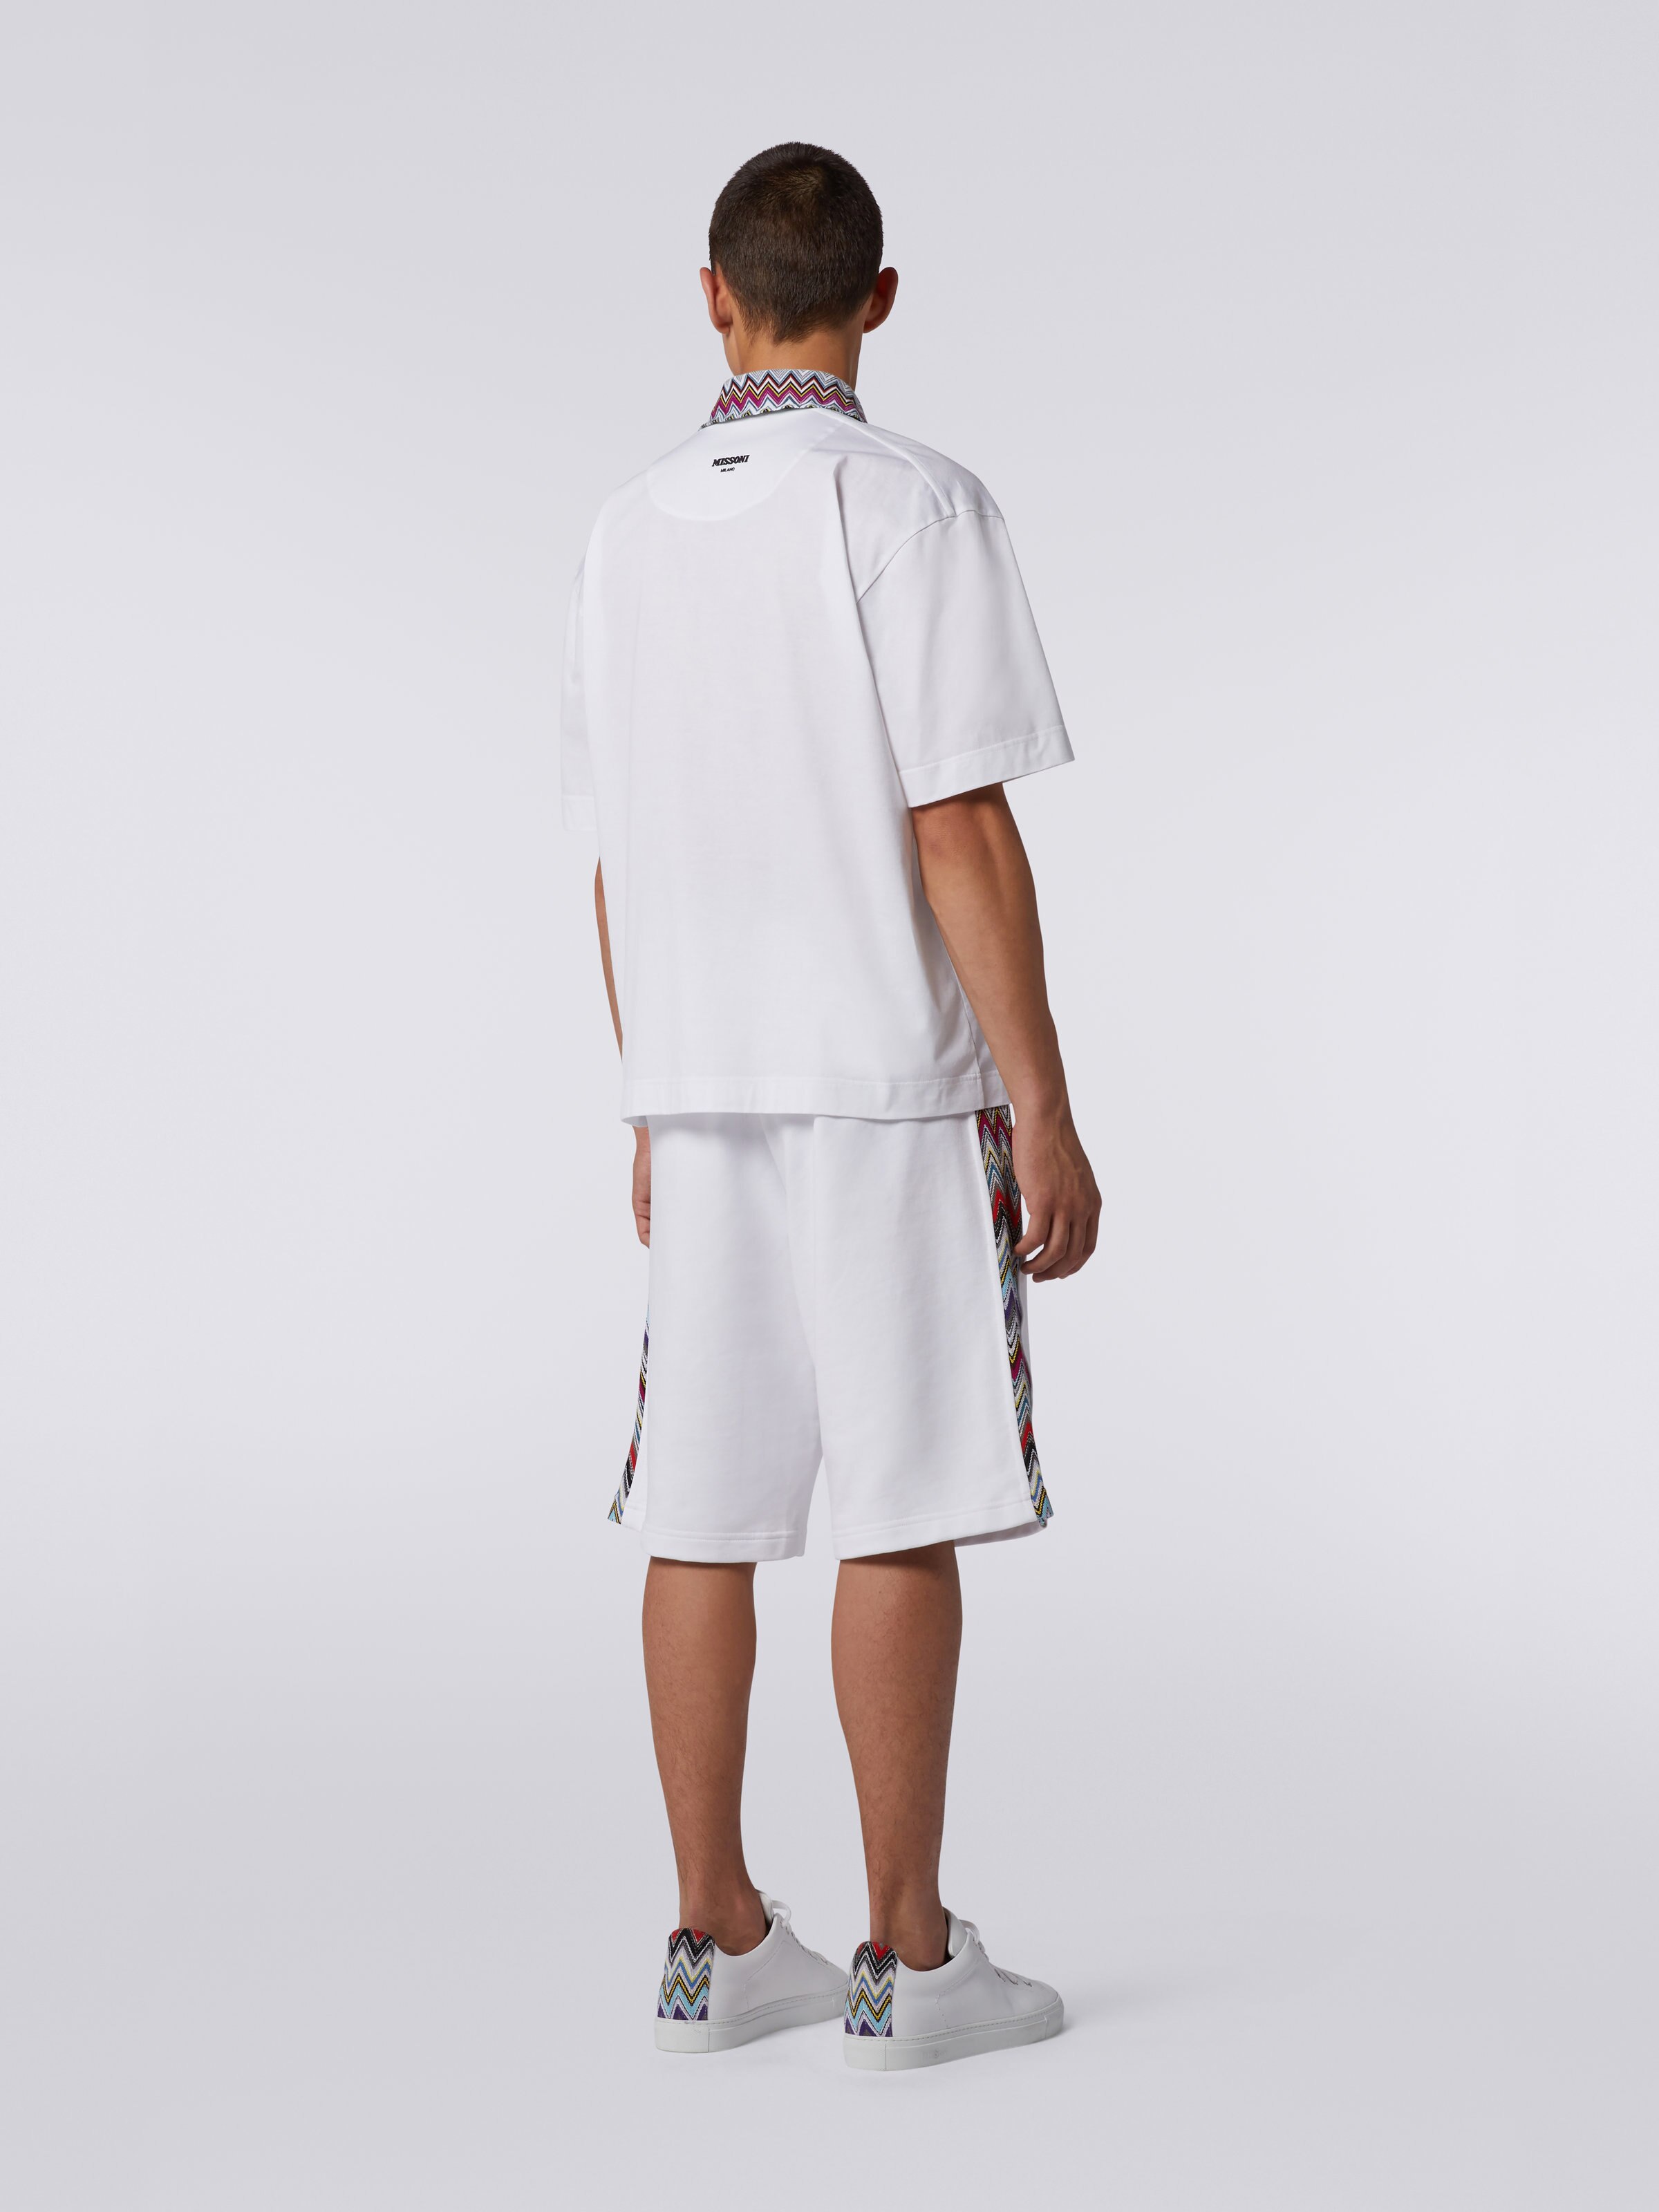 Cotton polo shirt with dégradé chevron pattern, White  - 3